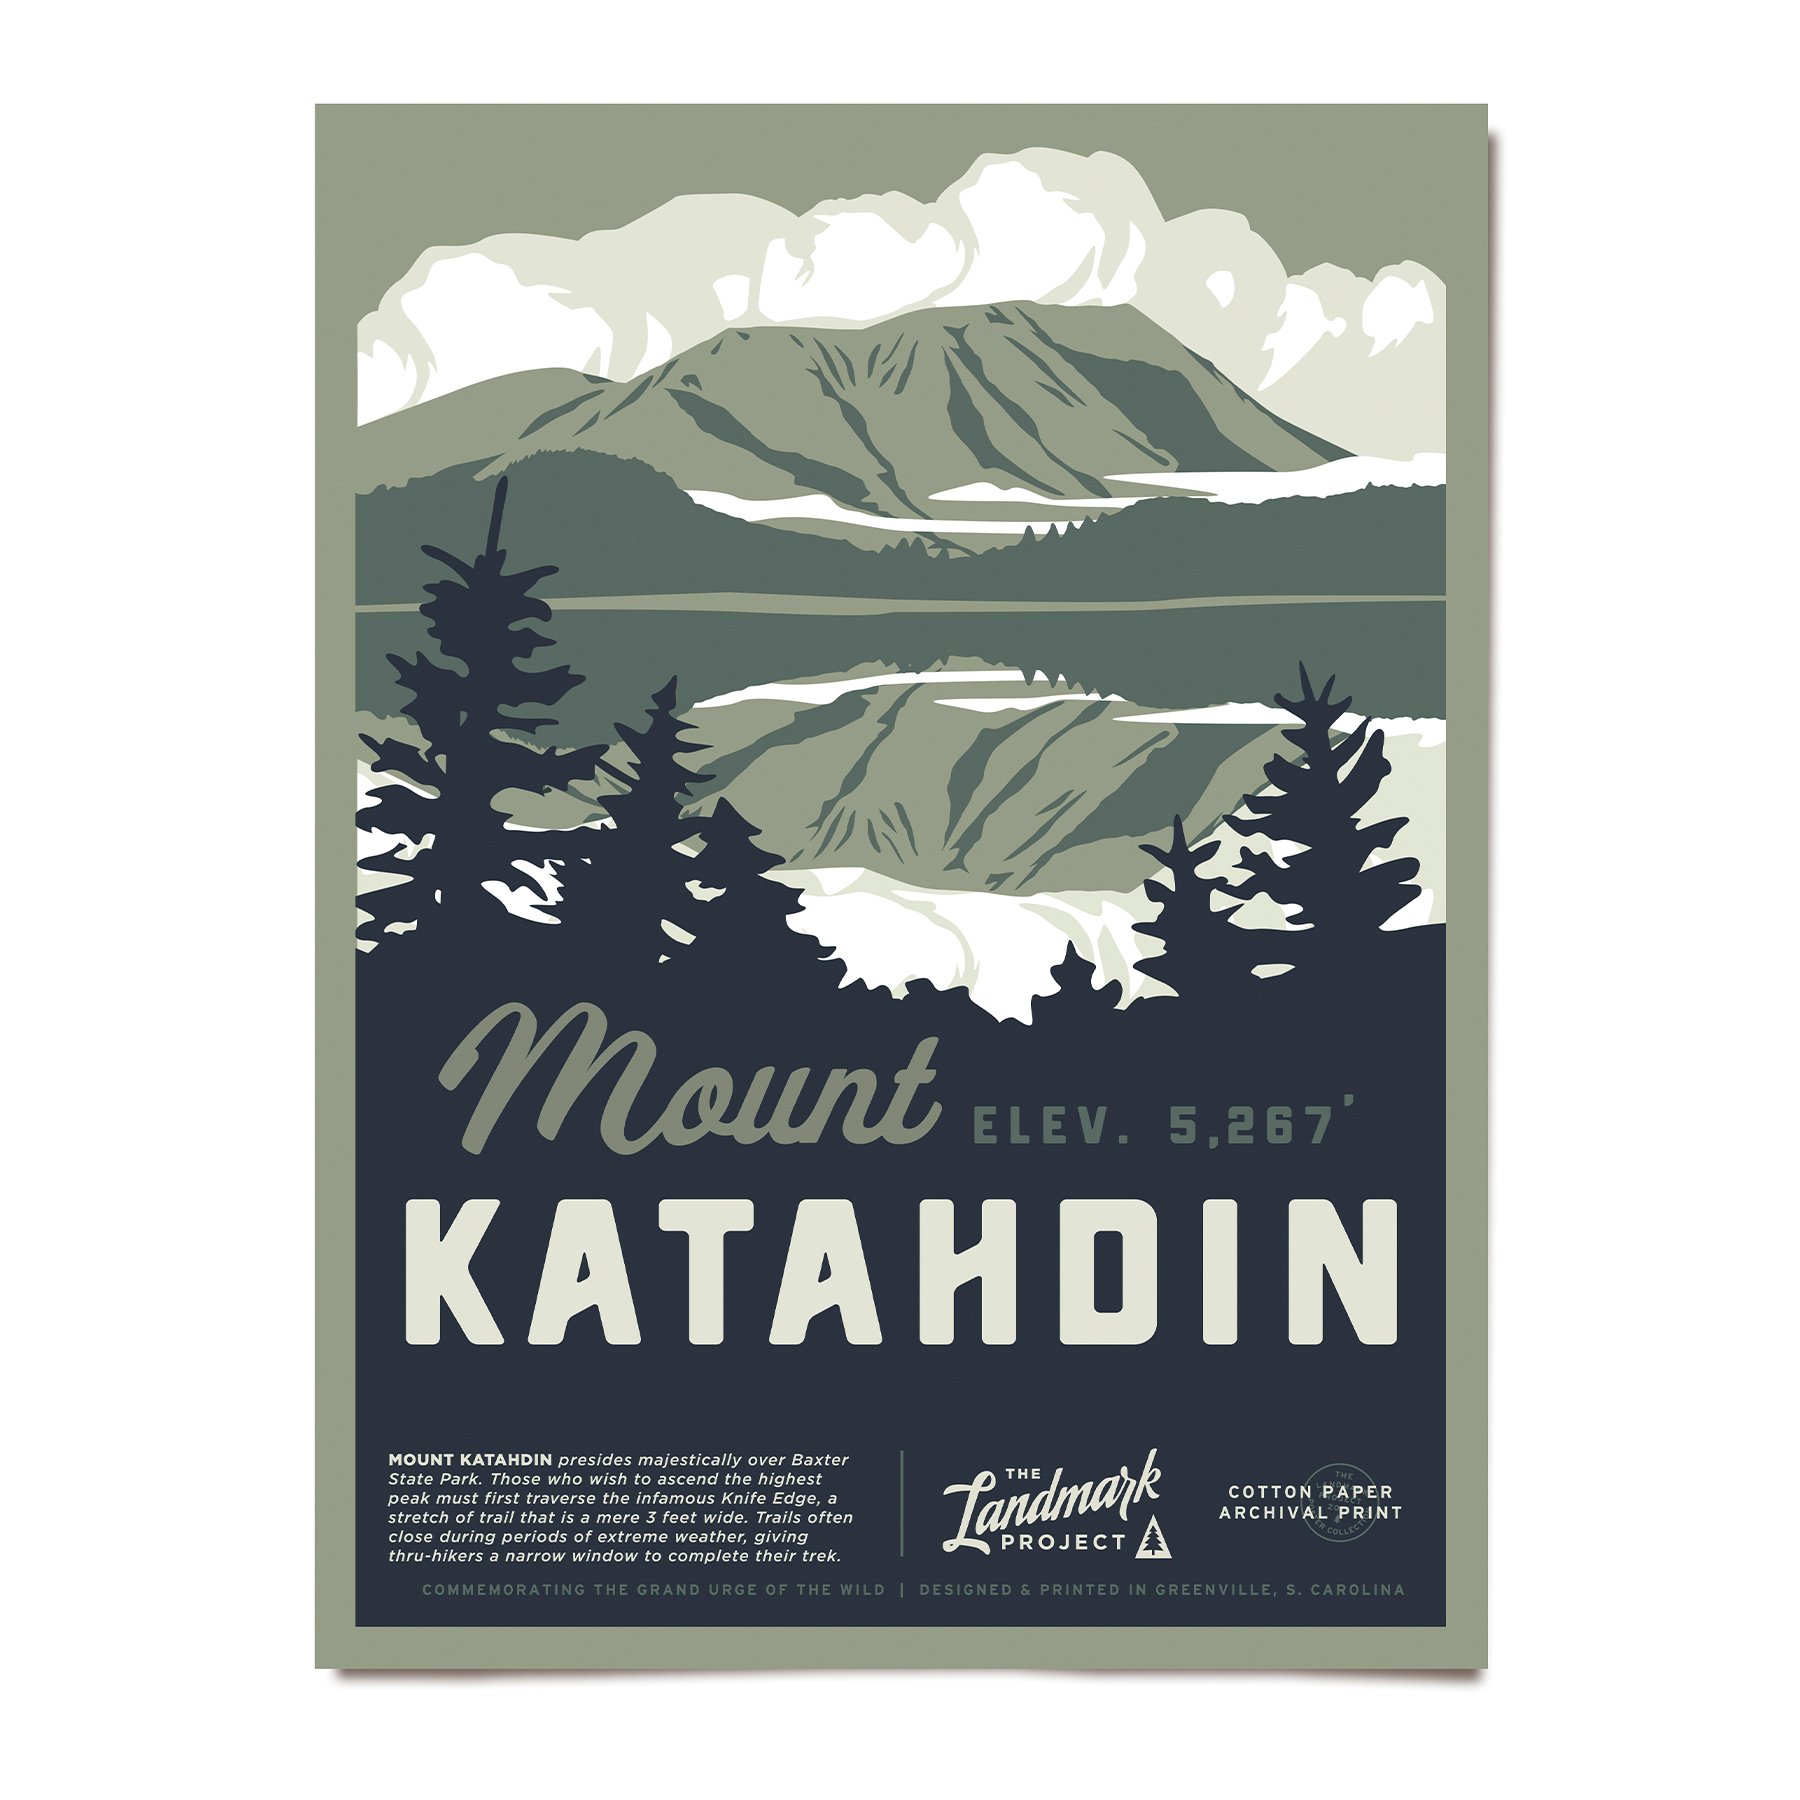 Mount KataHDin Poster The Landmark Project